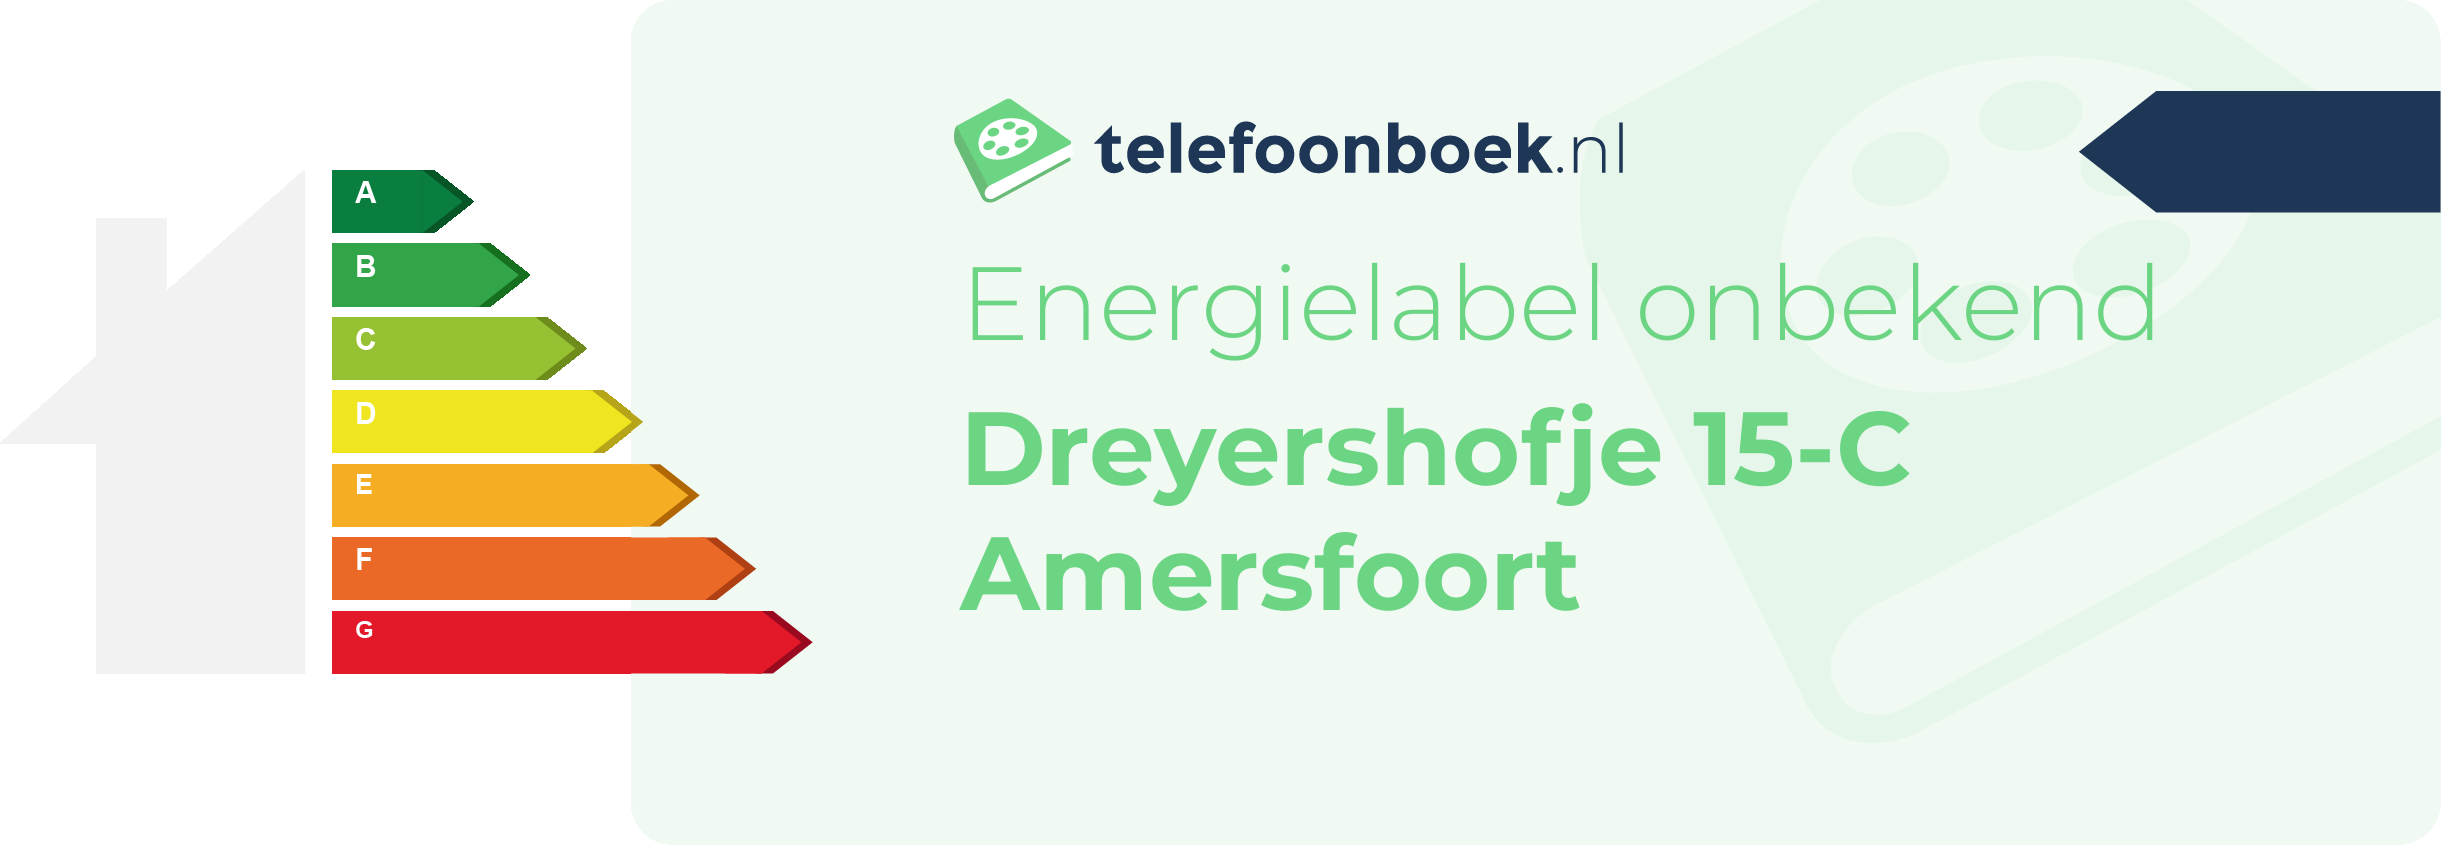 Energielabel Dreyershofje 15-C Amersfoort